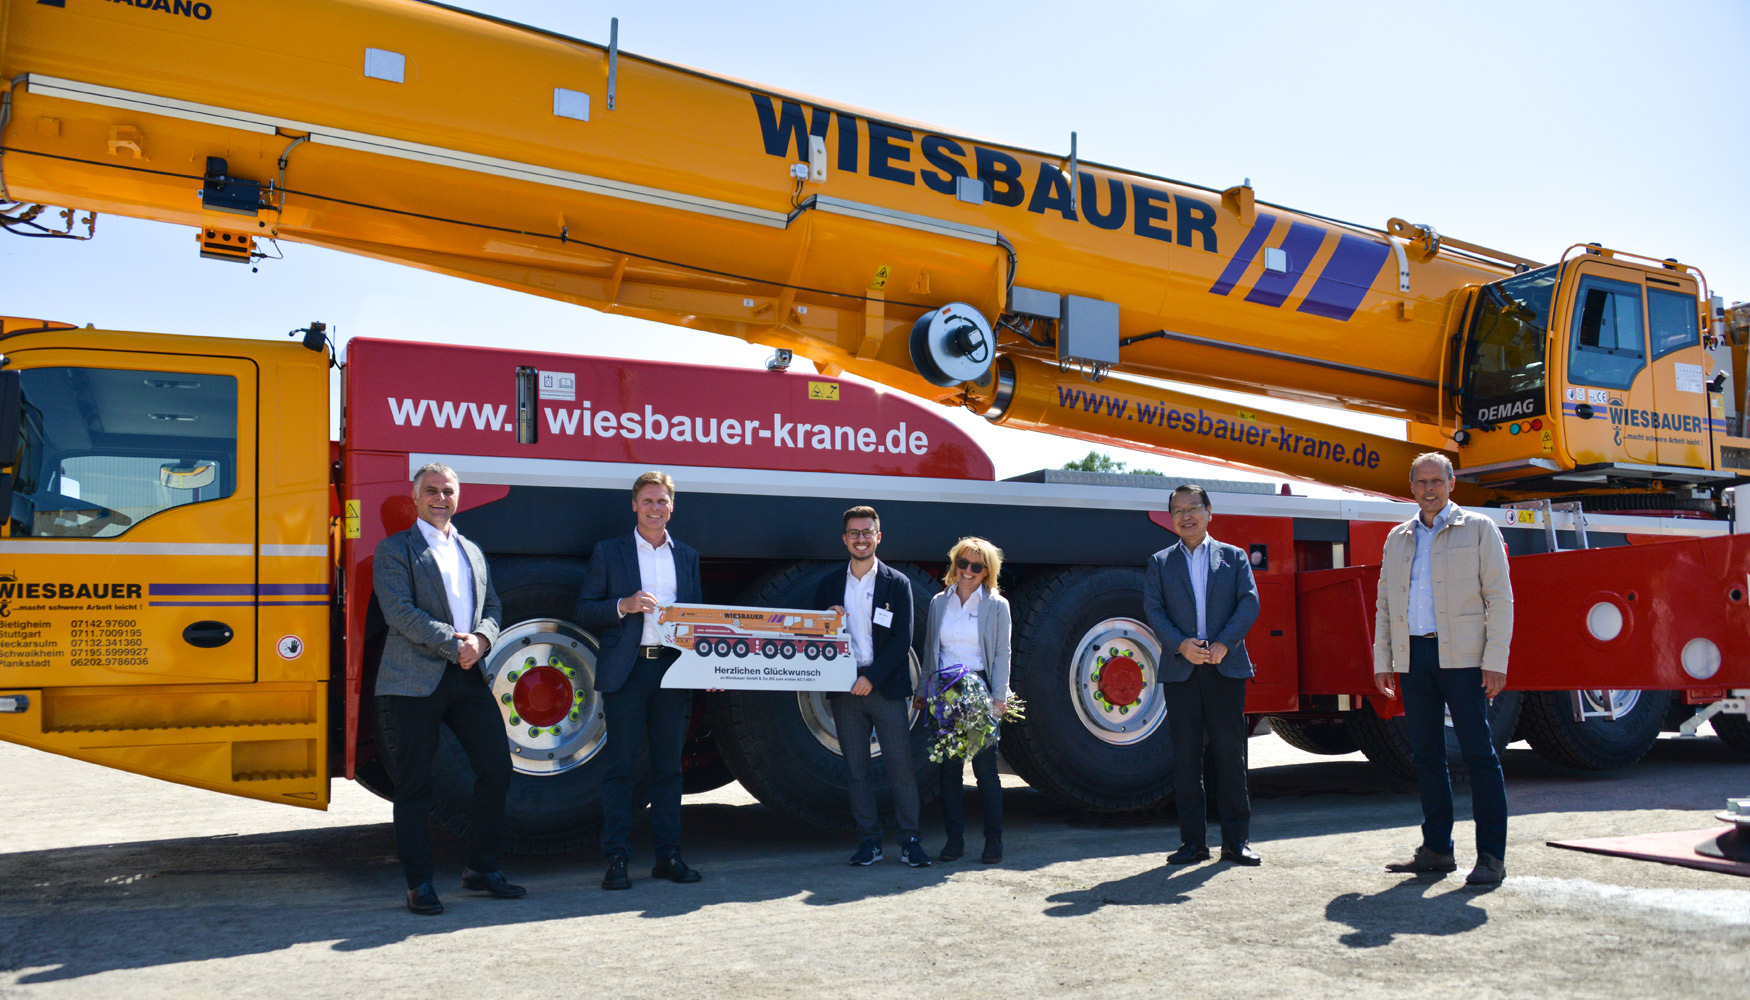 De izquierda a derecha: Jan Wieser, Frank Schrder, Florian Wiesbauer, Sabine Wiesbauer, Tadashi Suzuki y Michael Zieger...